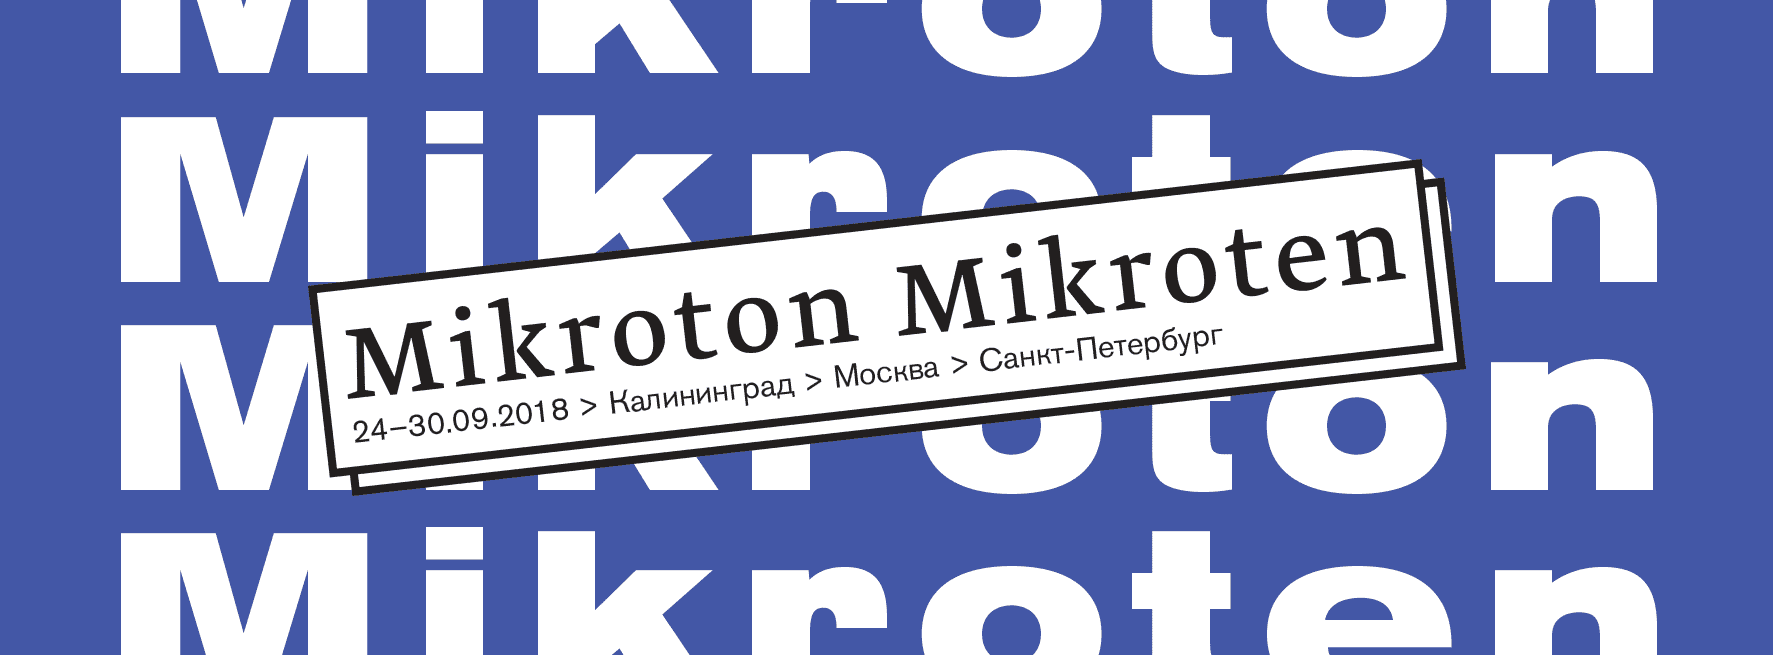 Фестиваль Mikroton Mikroten